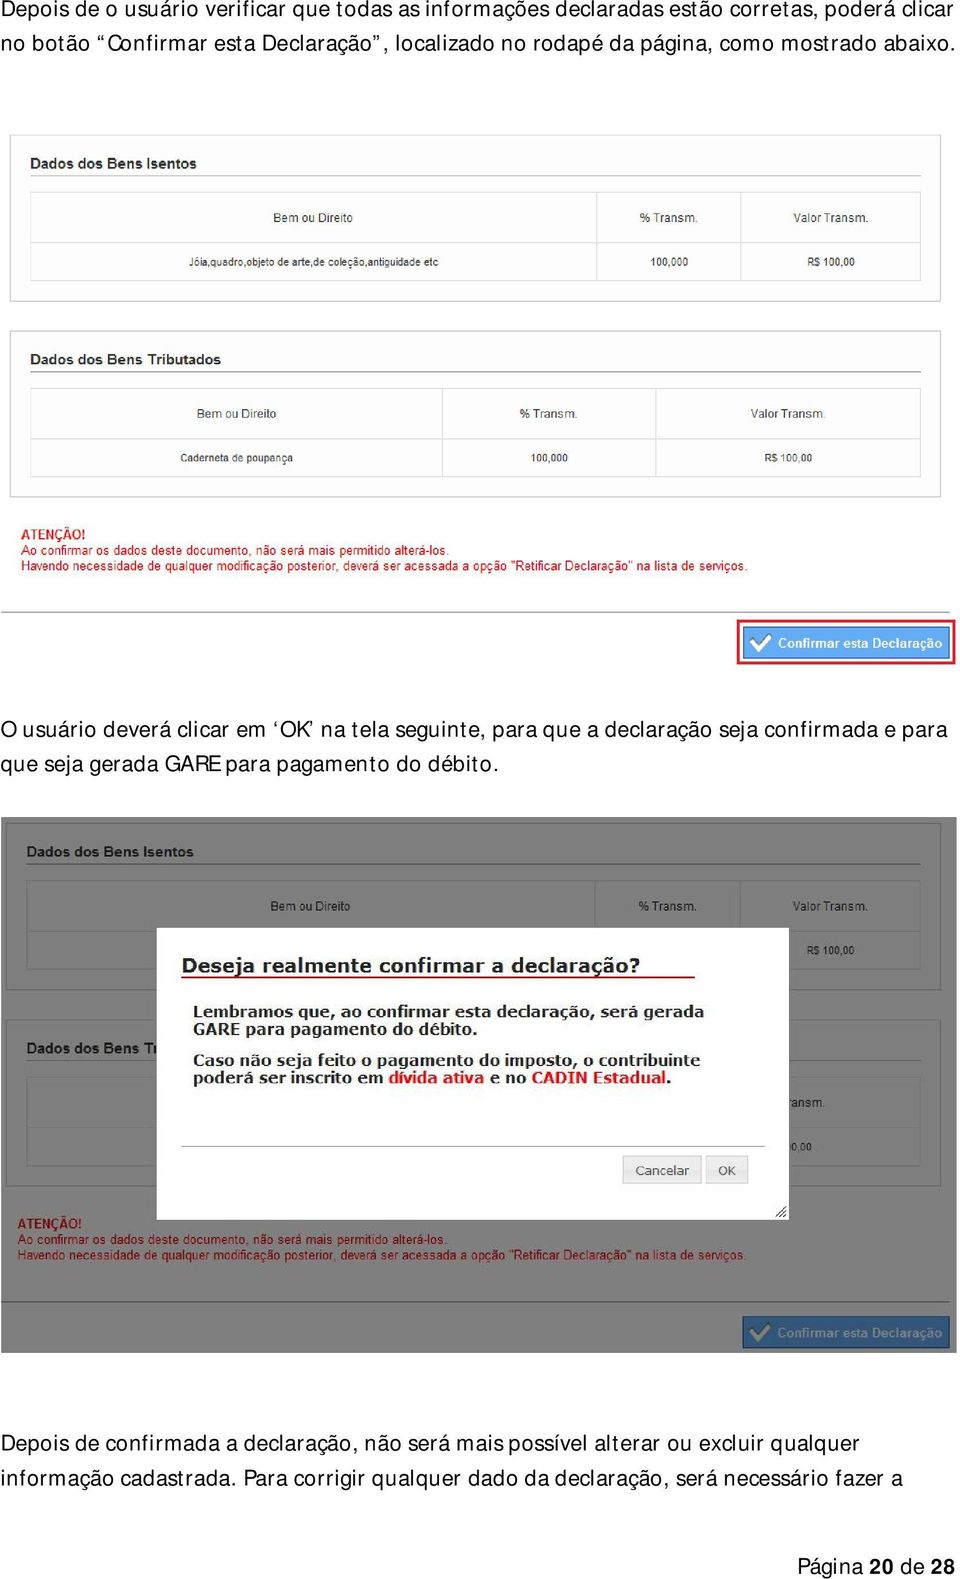 O usuário deverá clicar em OK na tela seguinte, para que a declaração seja confirmada e para que seja gerada GARE para pagamento